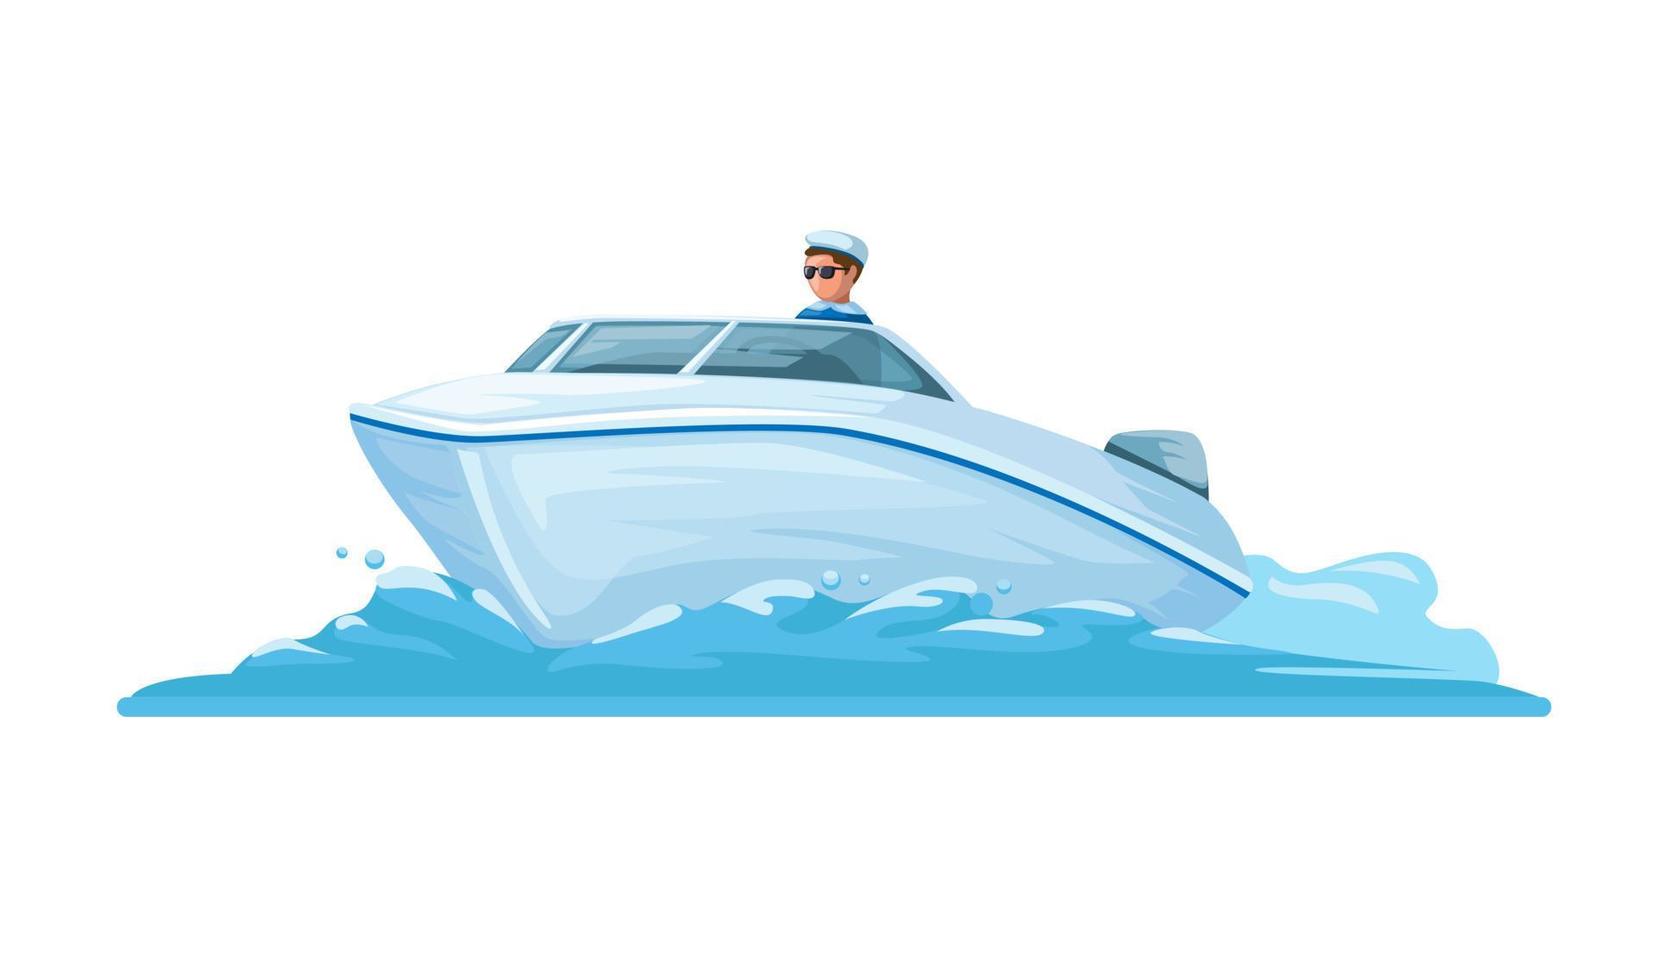 Man riding Speed Boat water transportation cartoon illustration vector